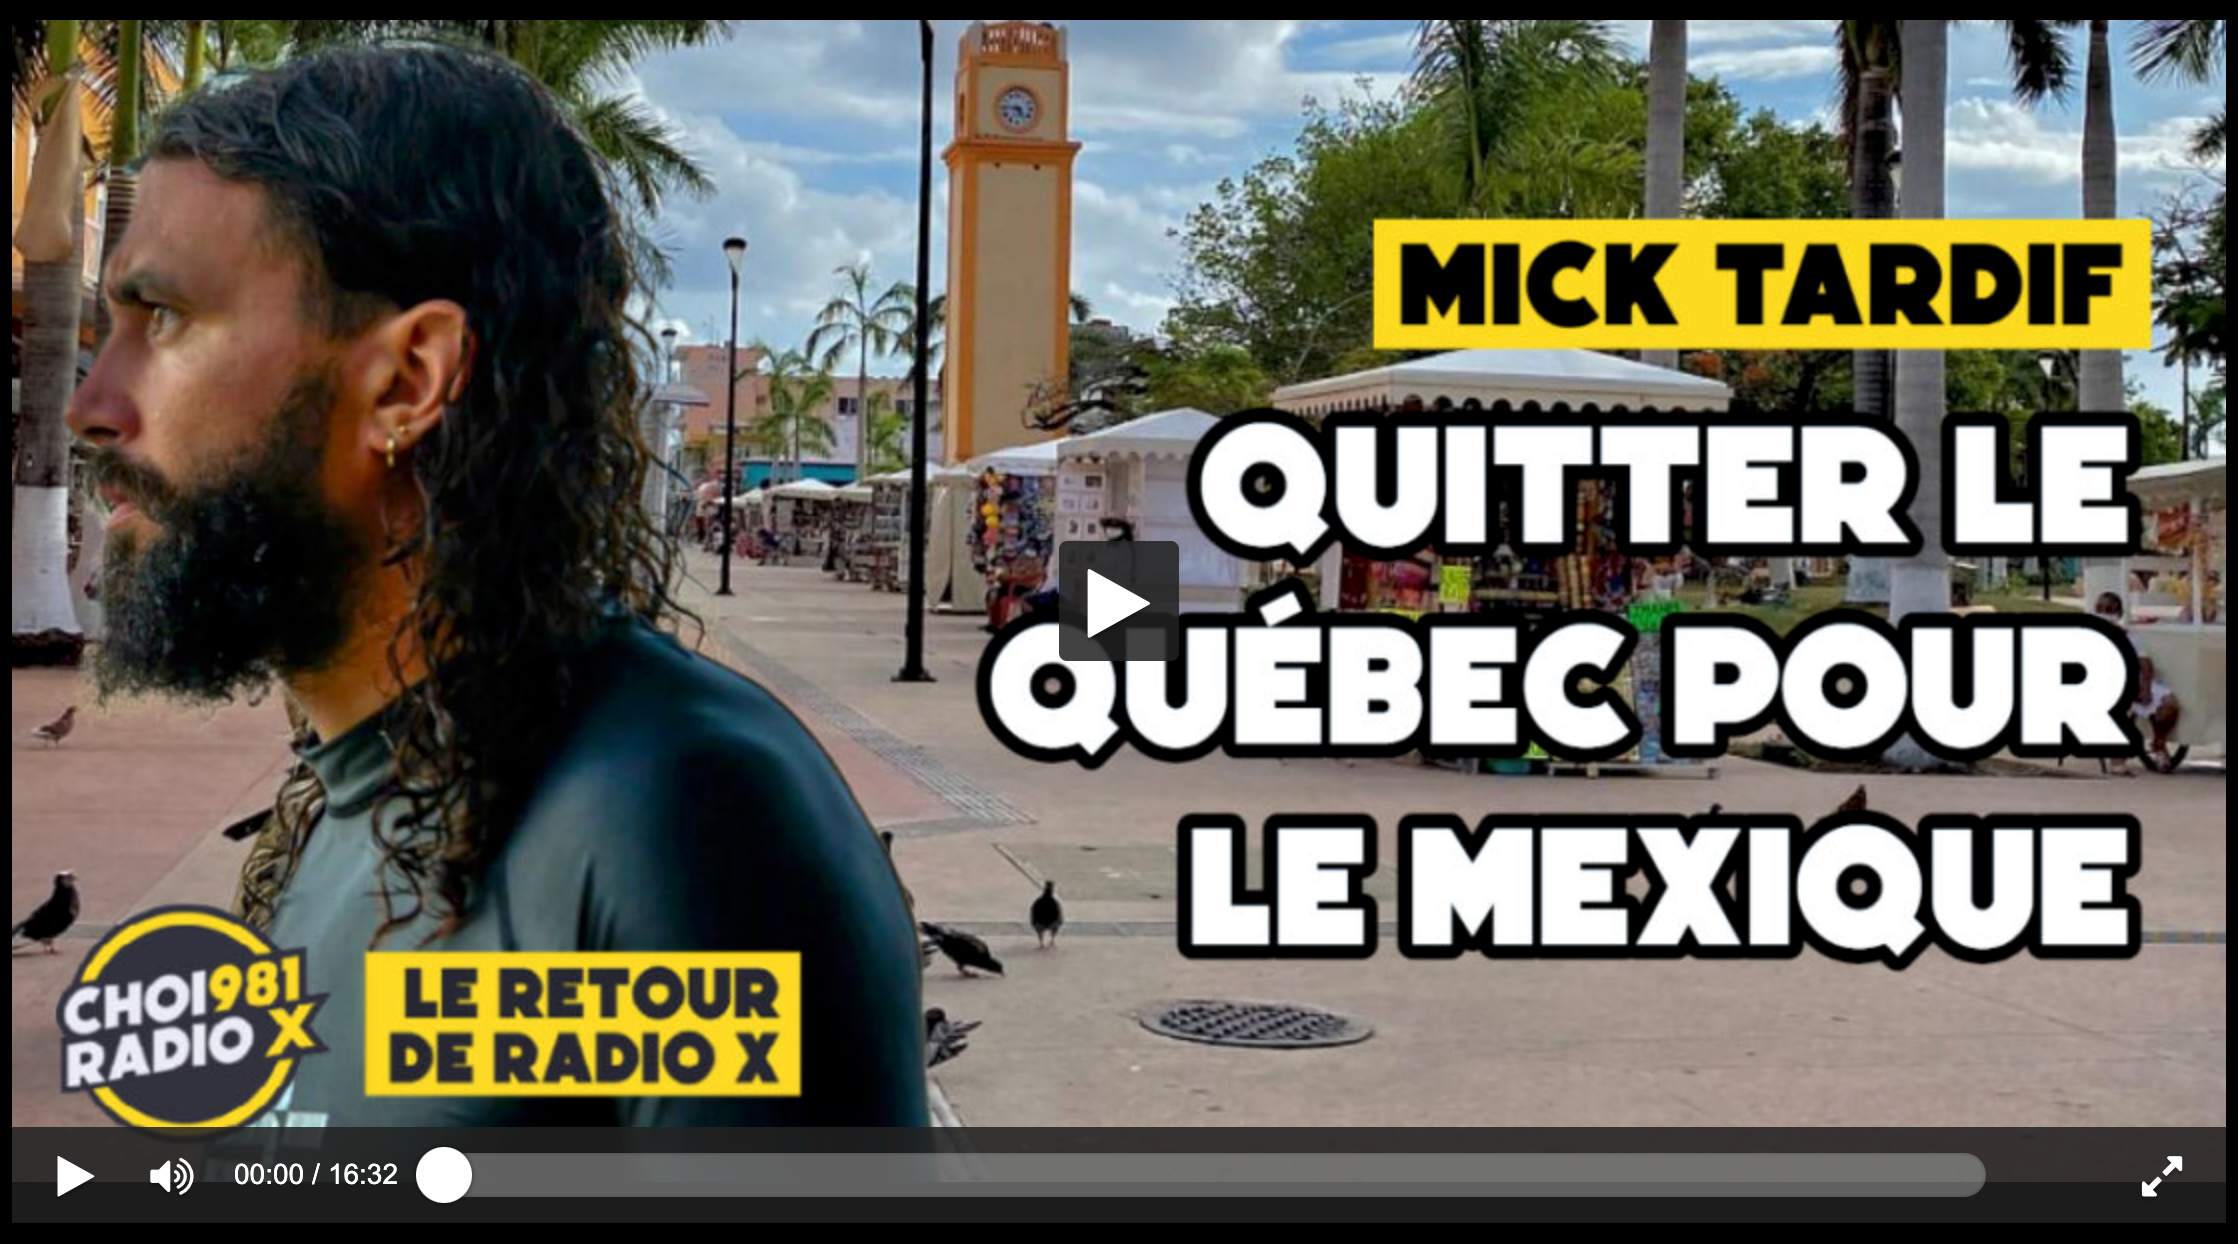 Mick Tardif quitter le Québec pour le Mexique